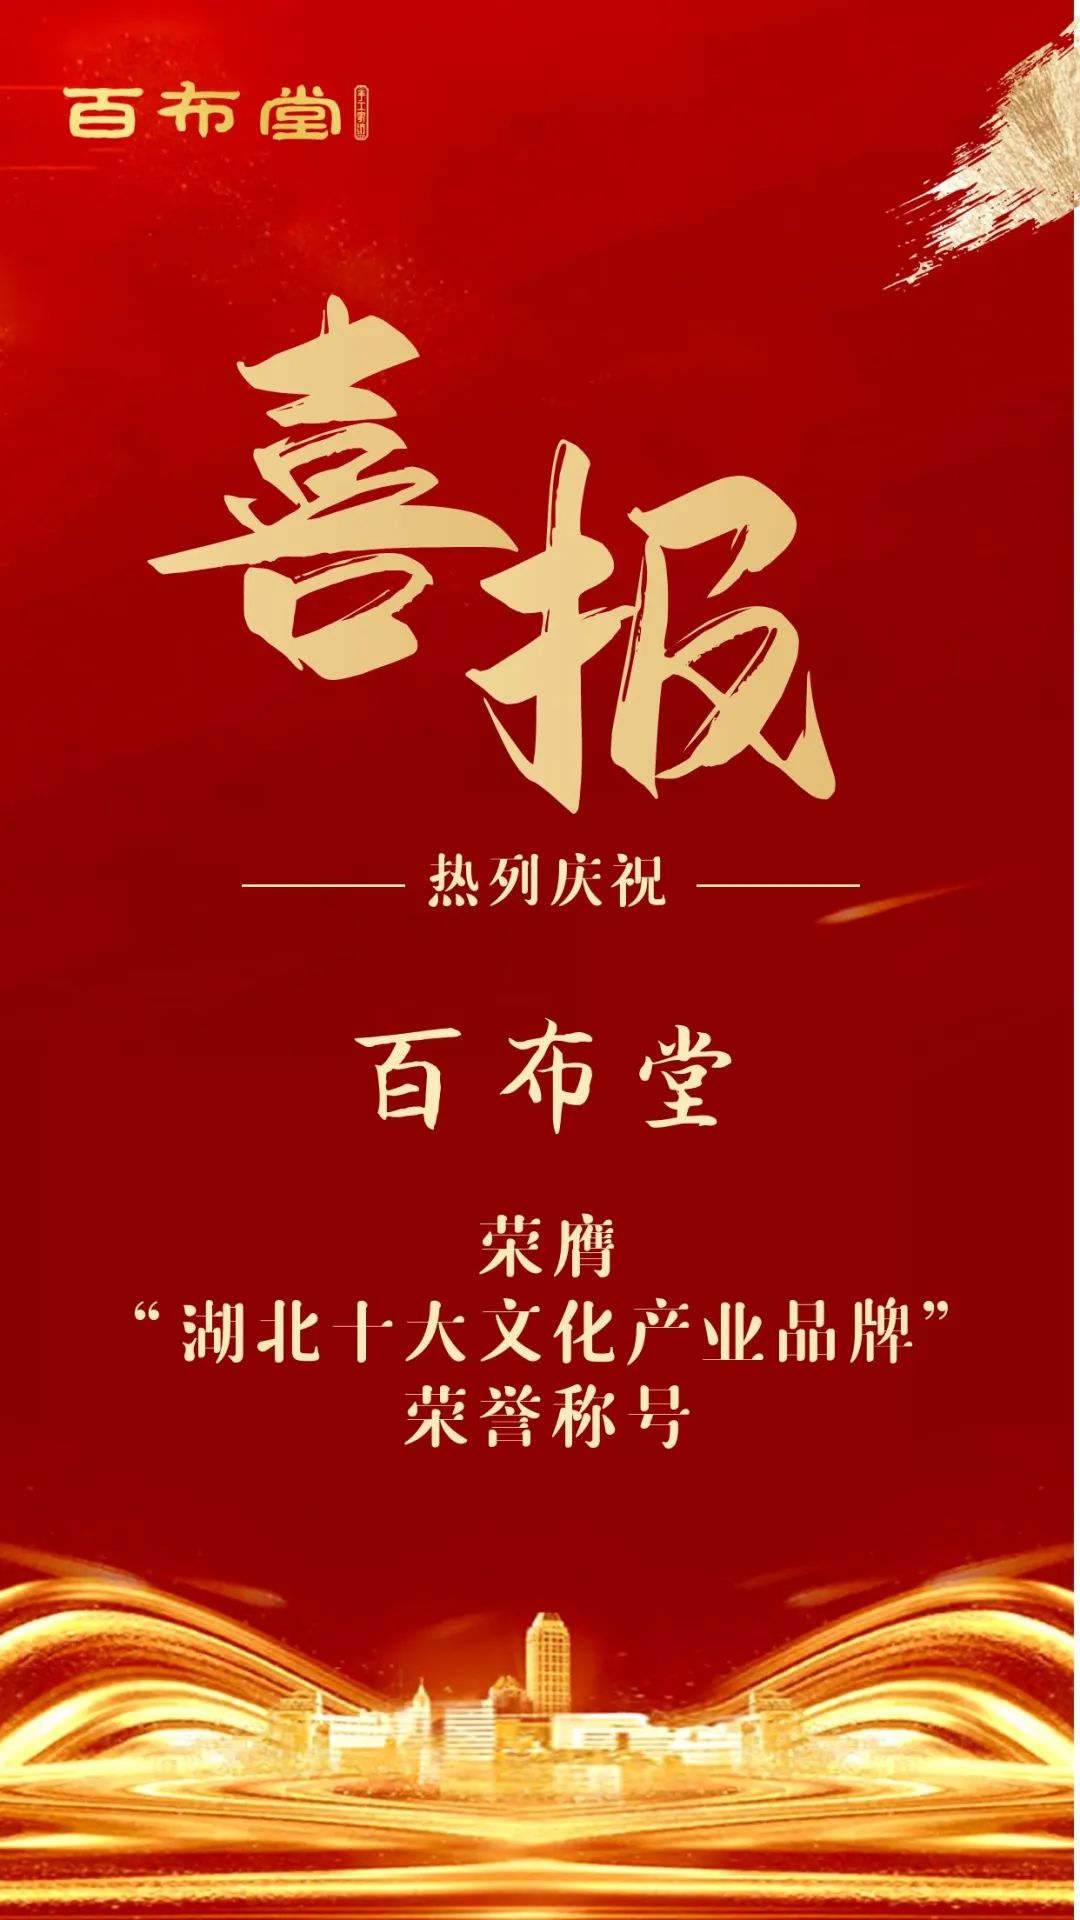 百布堂荣膺“湖北省十大文化产业品牌”荣誉称号